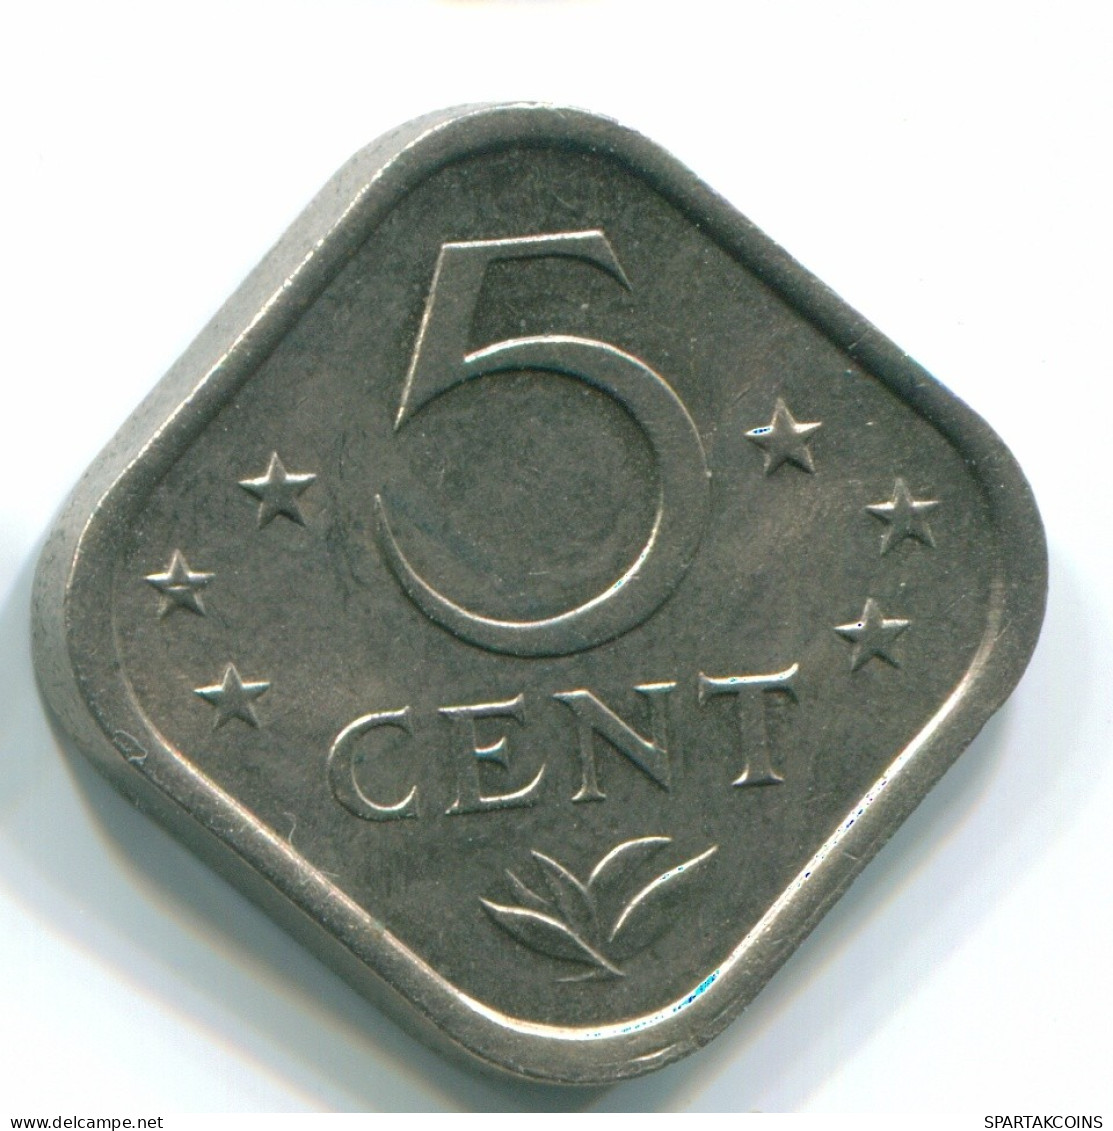 5 CENTS 1975 NIEDERLÄNDISCHE ANTILLEN Nickel Koloniale Münze #S12258.D.A - Niederländische Antillen